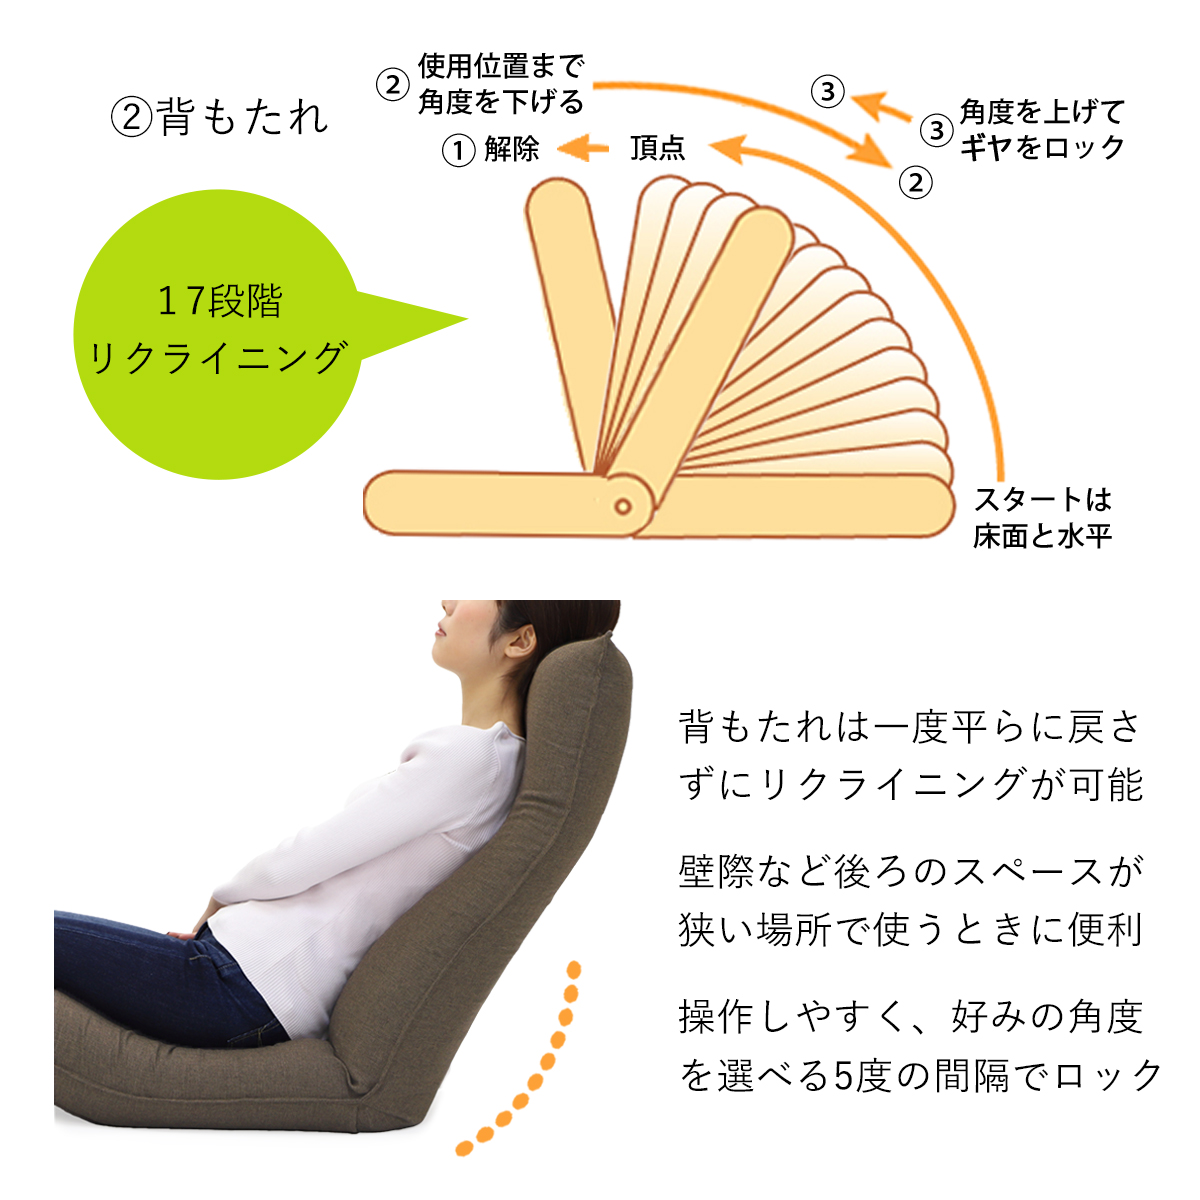 産学連携 リラックス座椅子4-M 《スタンダード》 日本製 ヤマザキ